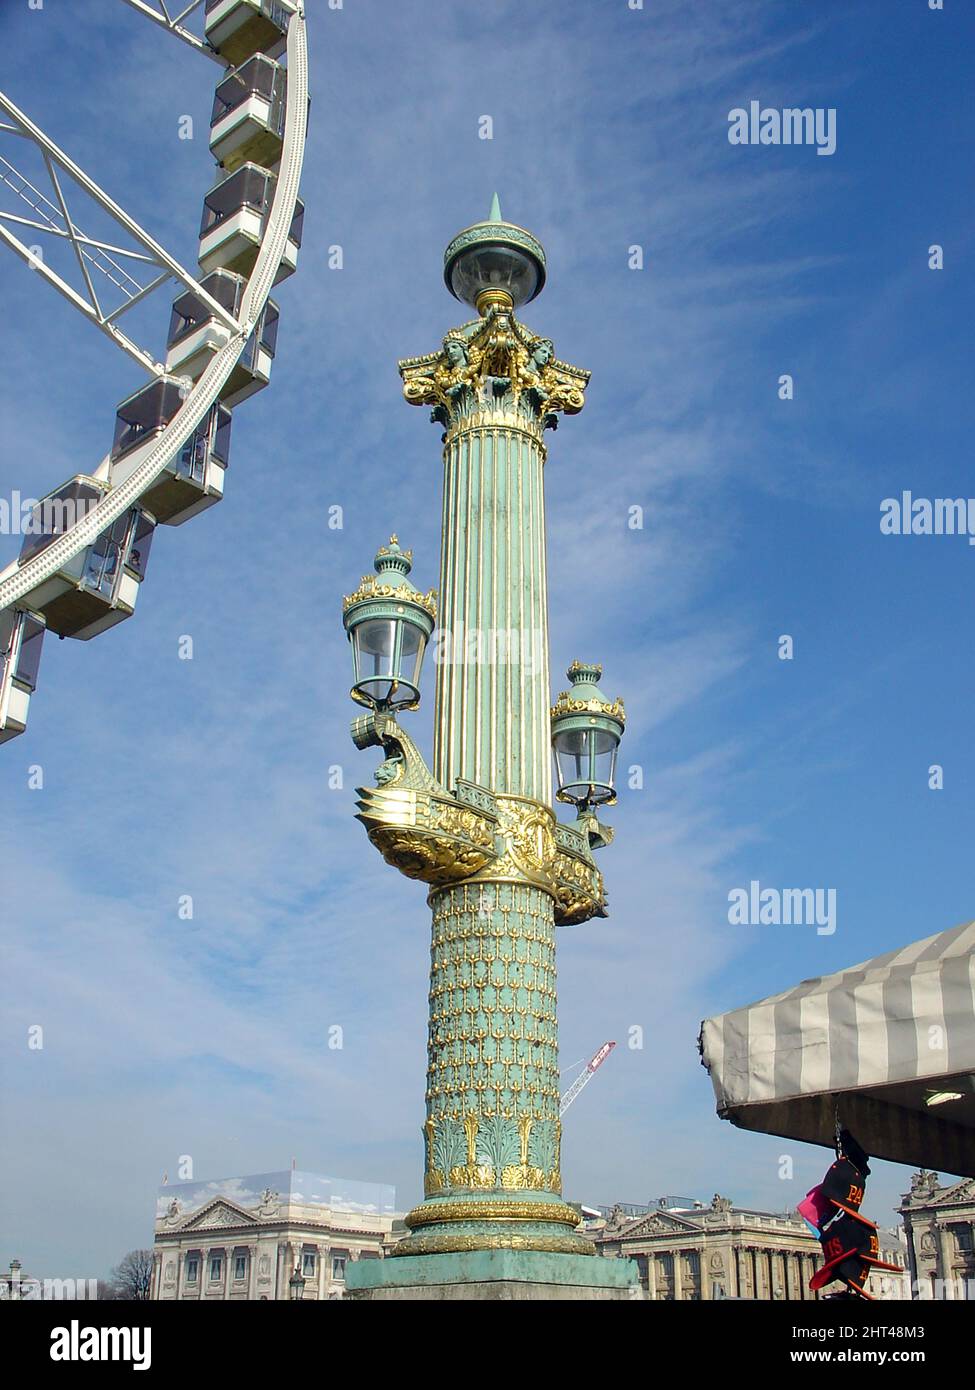 Bateau de combat à lampadaire sur la place de la Concorde, Paris, deux têtes de lampe sont montées sur l'arc du navire comme des couronnes symbolisant la royauté. Banque D'Images